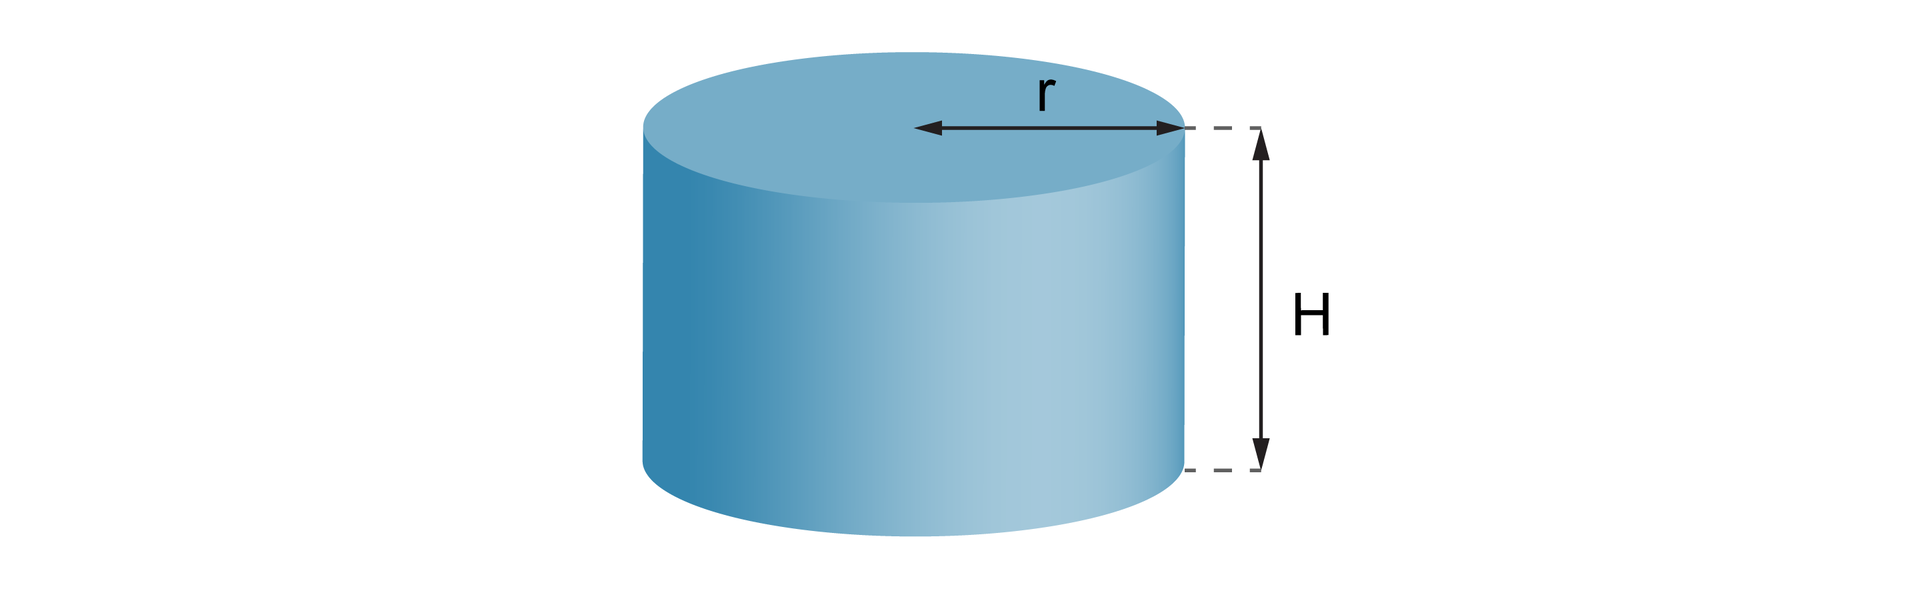 Rysunek walca, którego podstawą jest koło o promieniu r, o wysokości H.